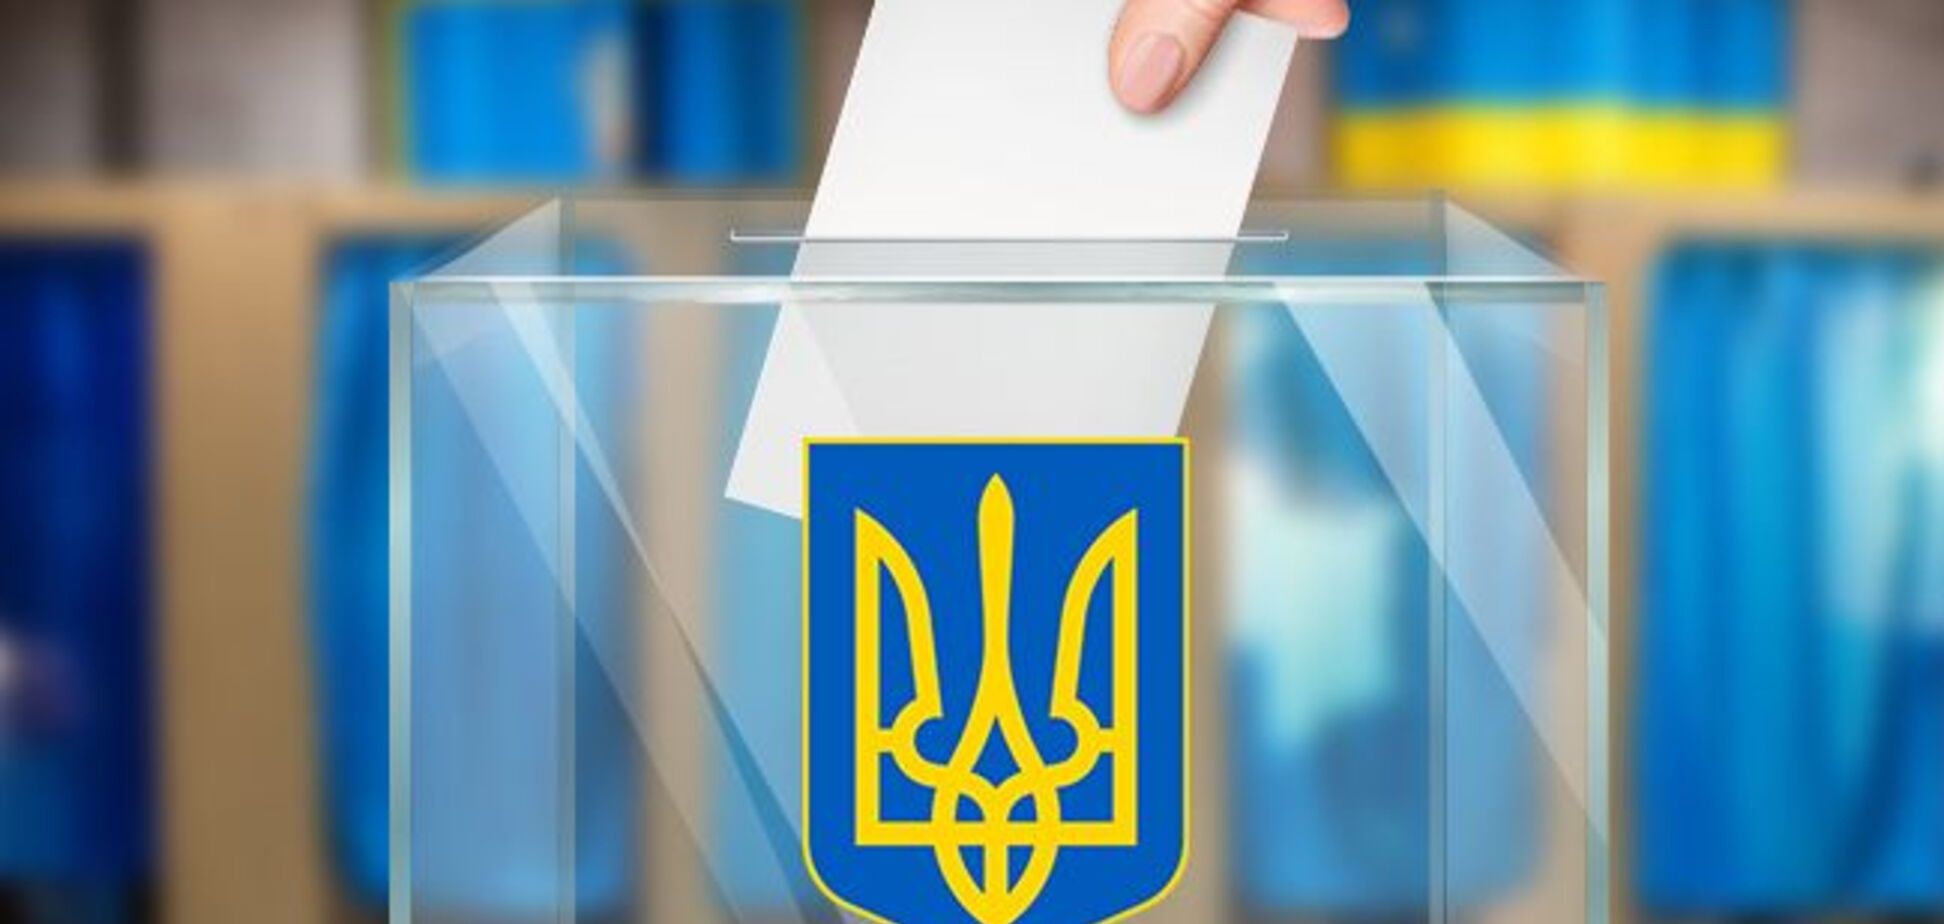 Изменения в Избирательный кодекс нарушат конституционные права граждан – мэры украинских городов